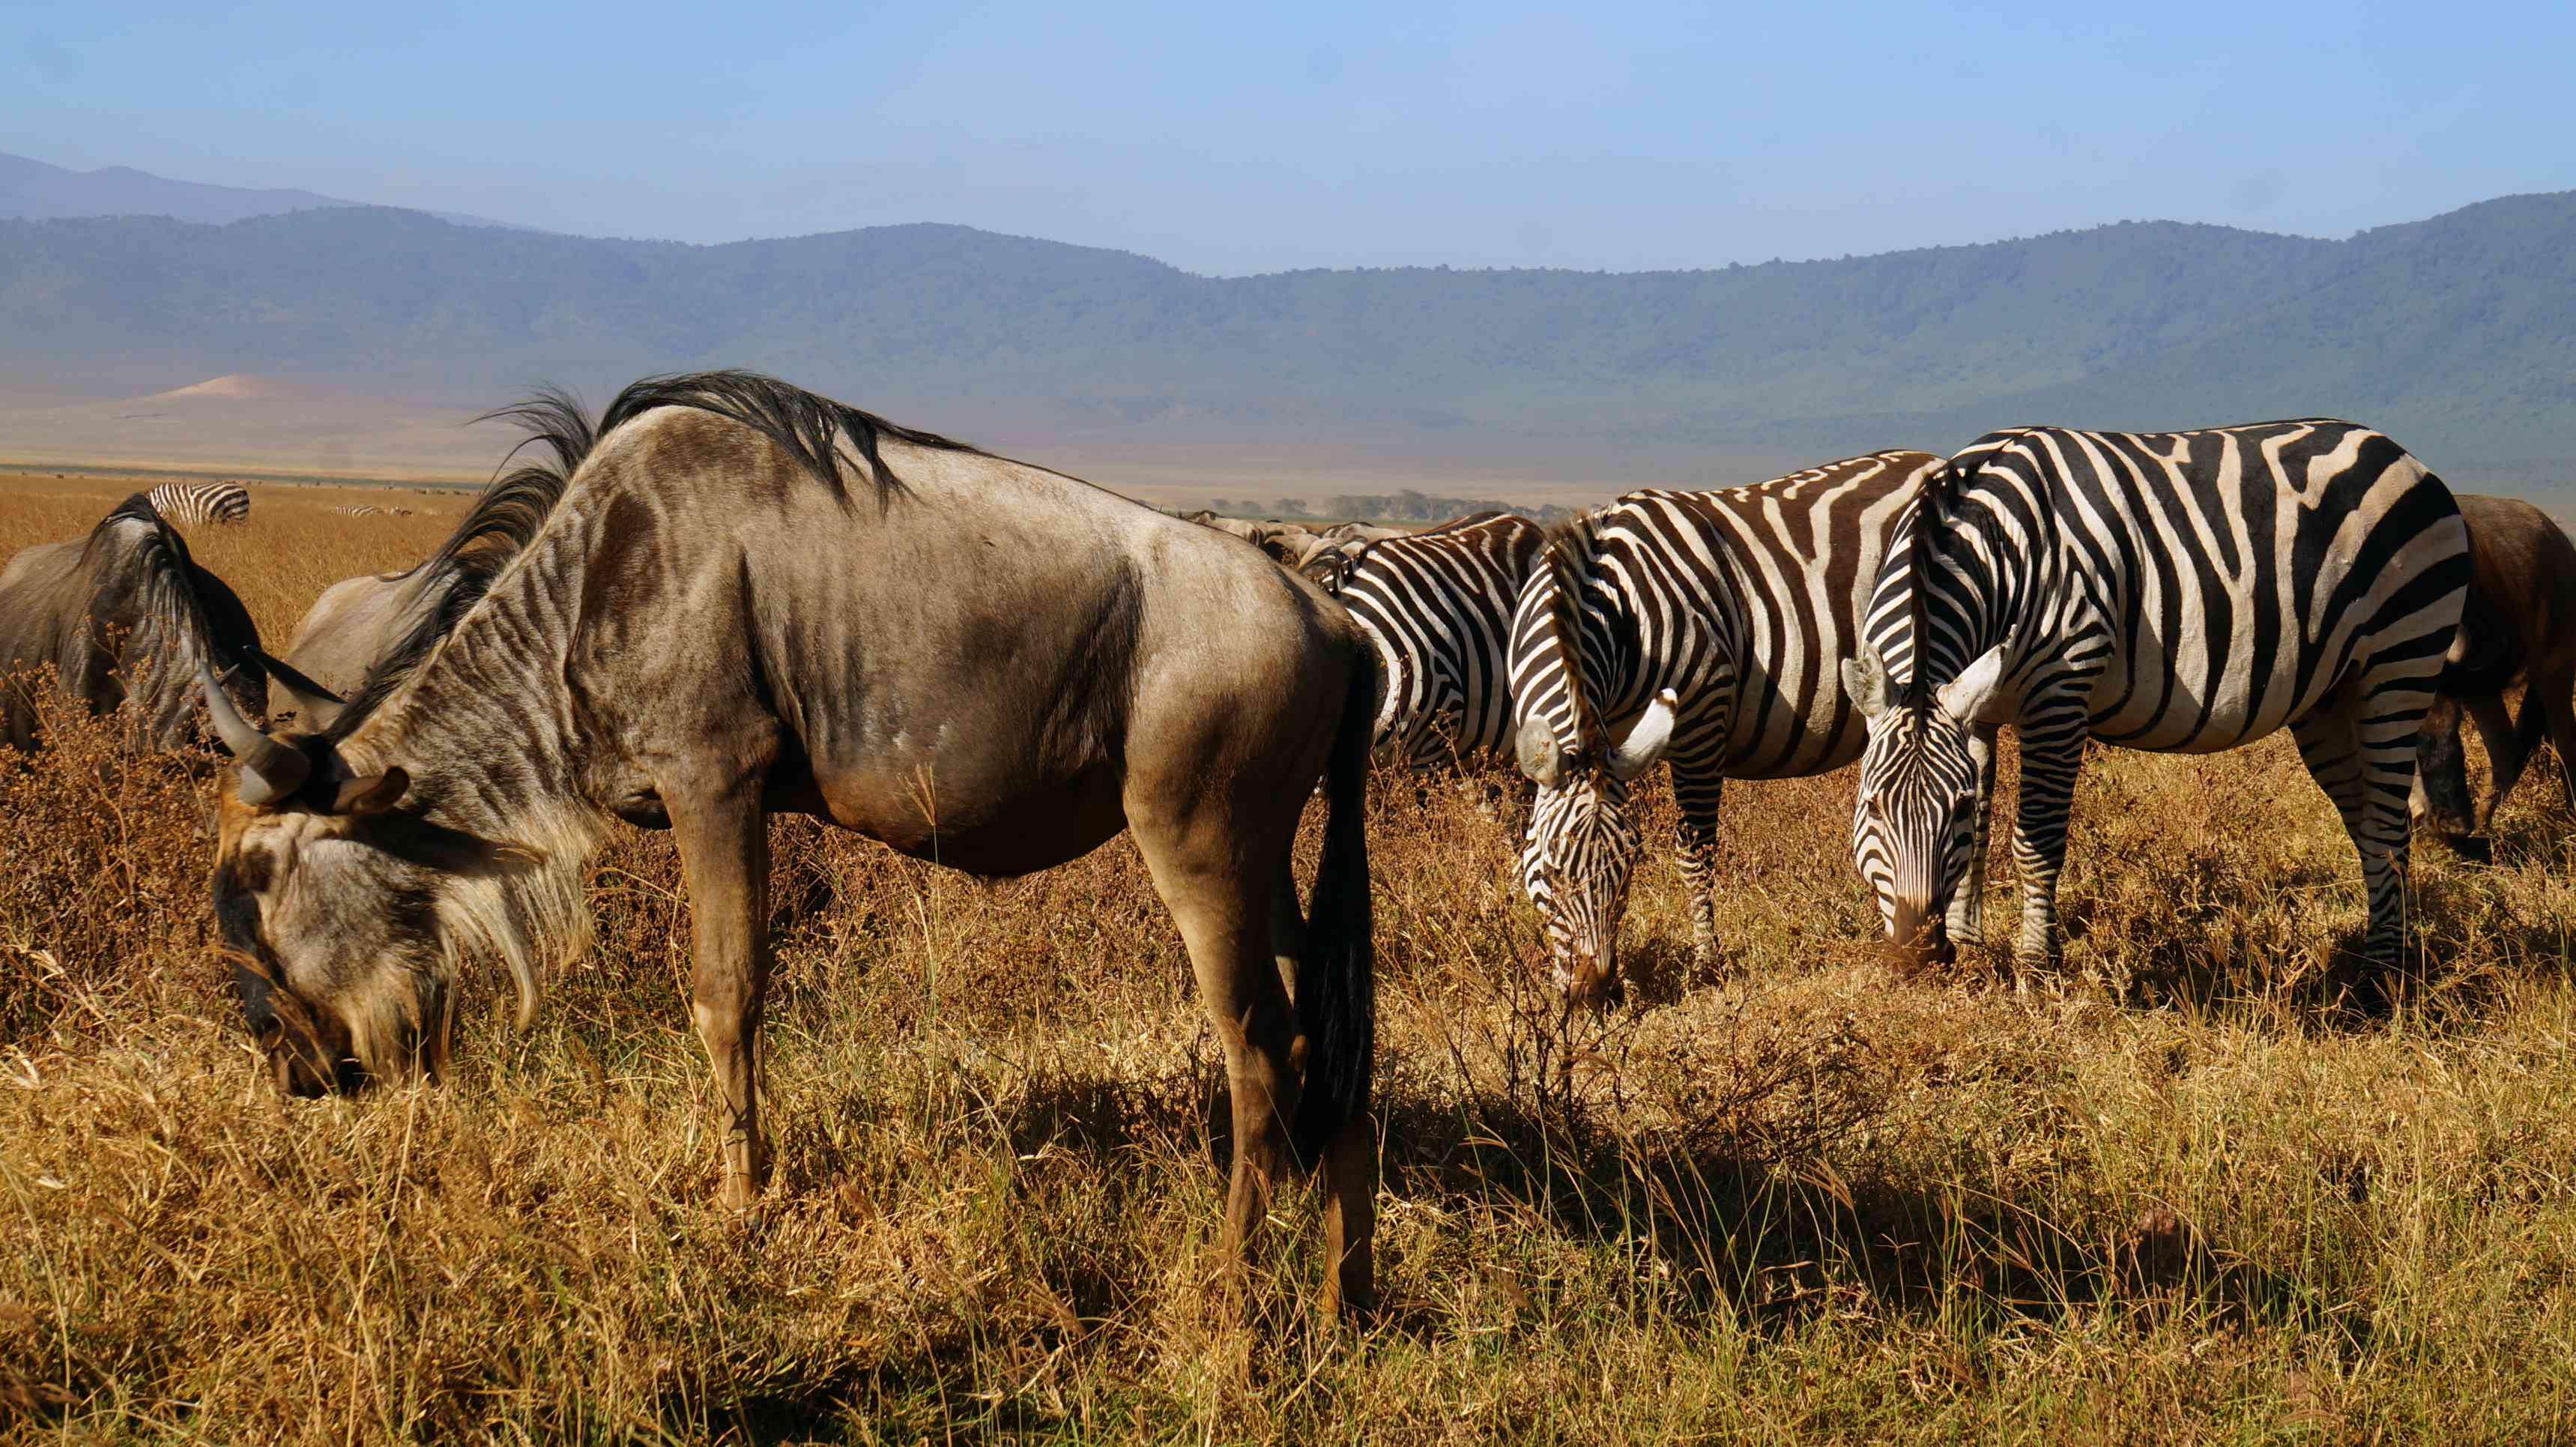 Ngorongoro Conservation Area.